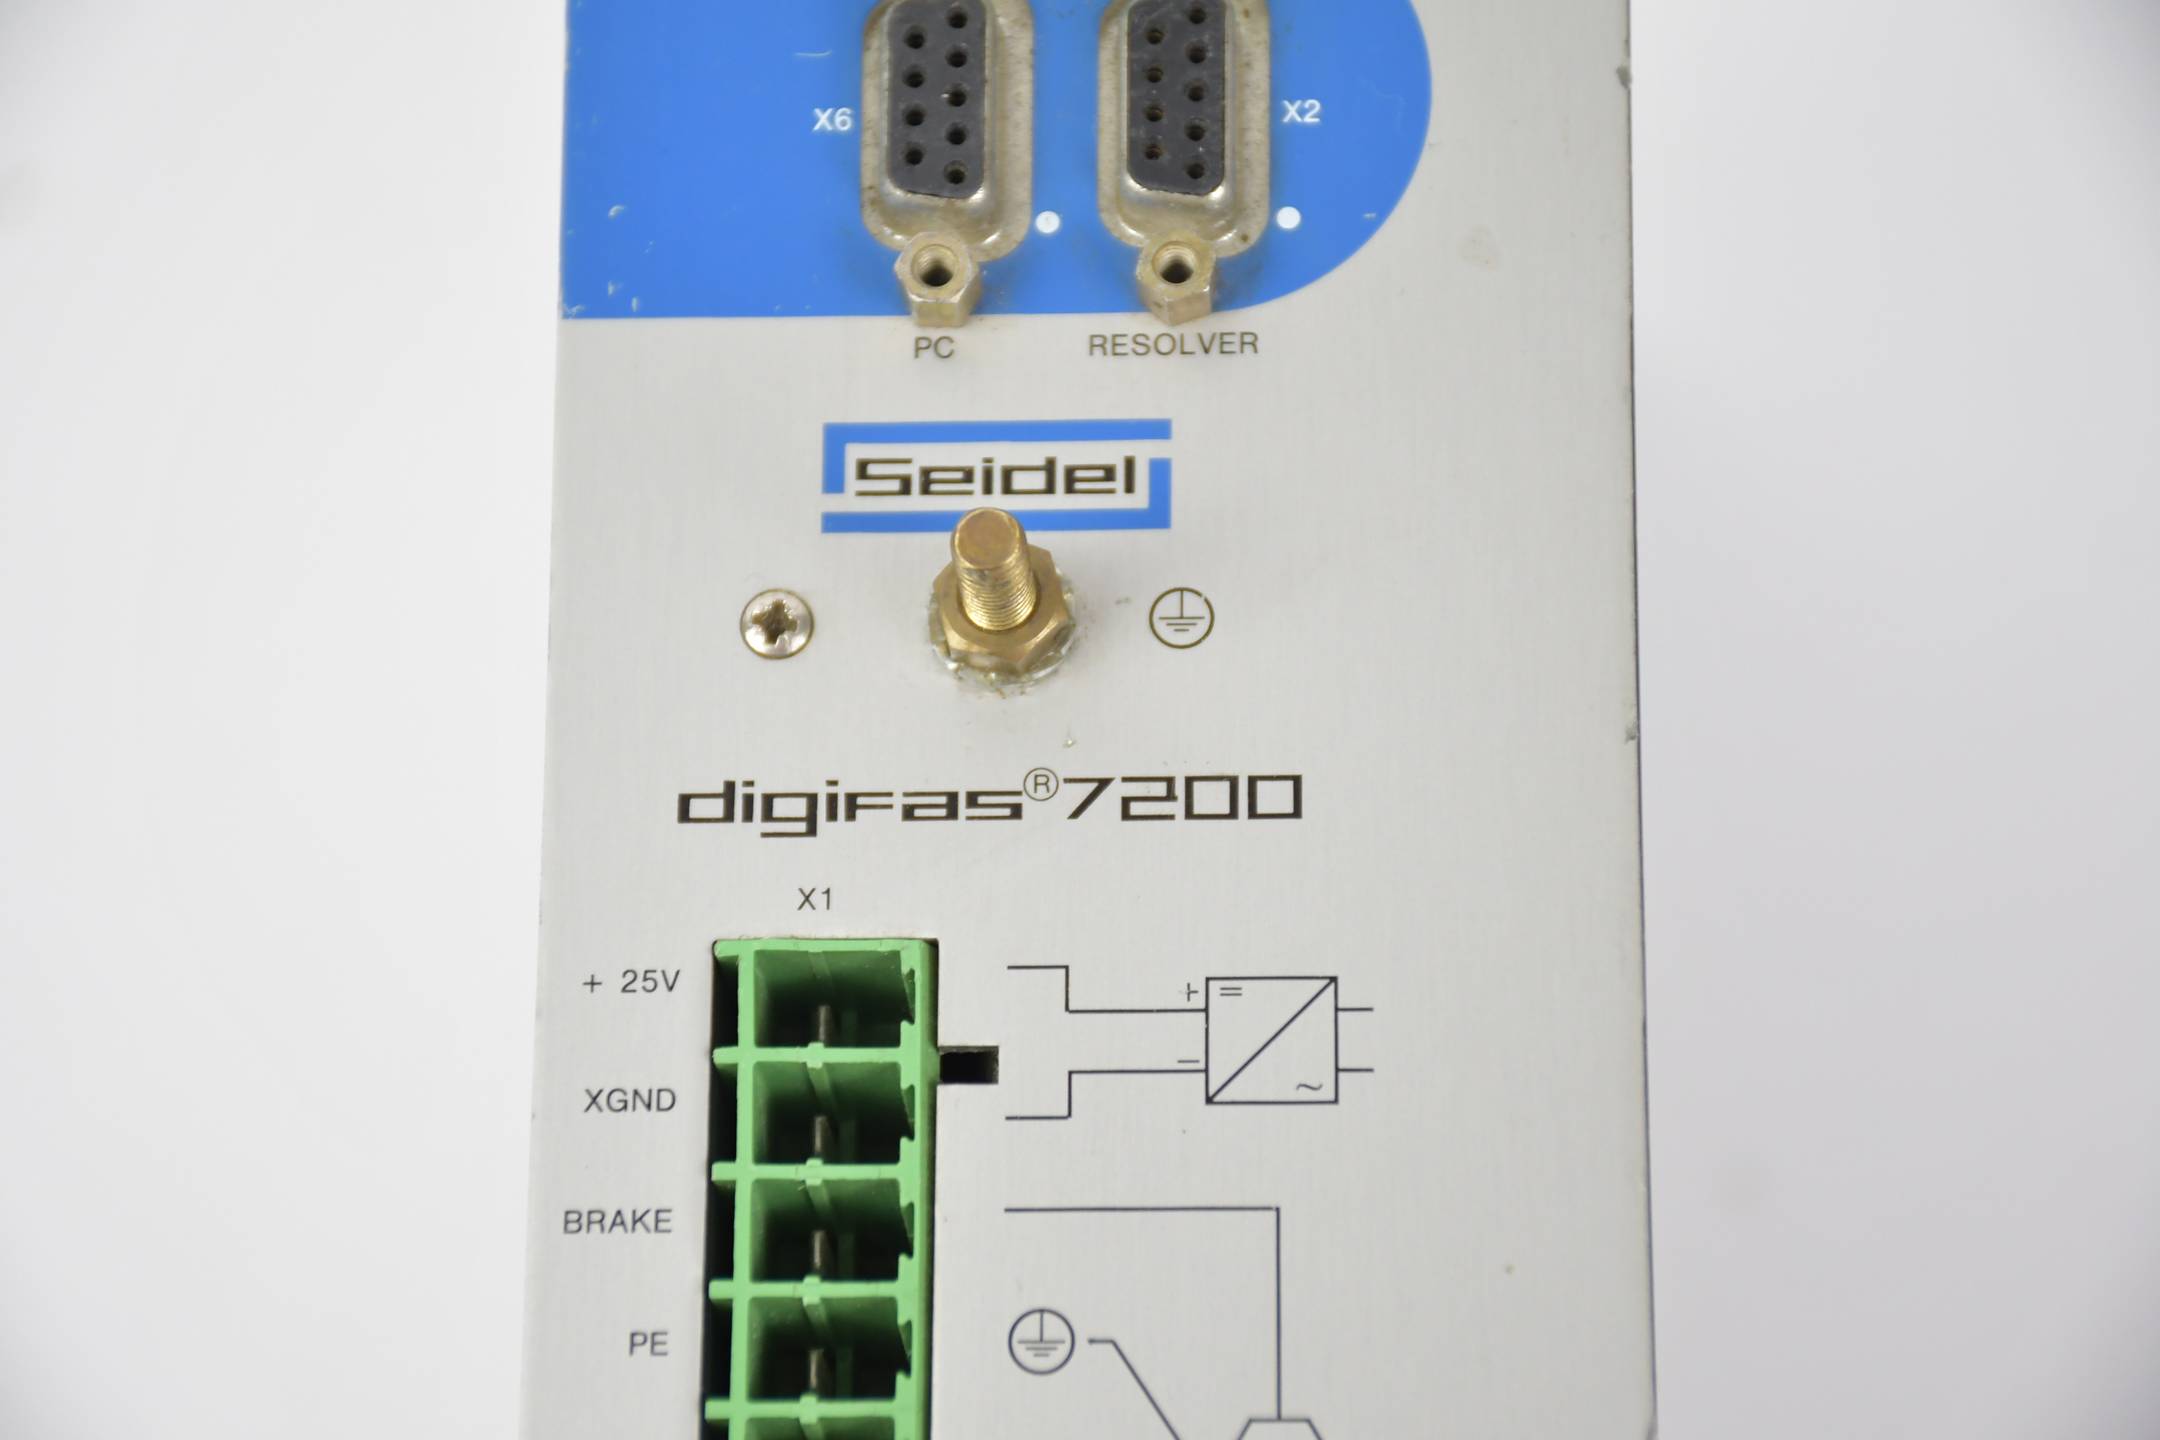 Seidel digifas ® 7200 Frequenzumrichter